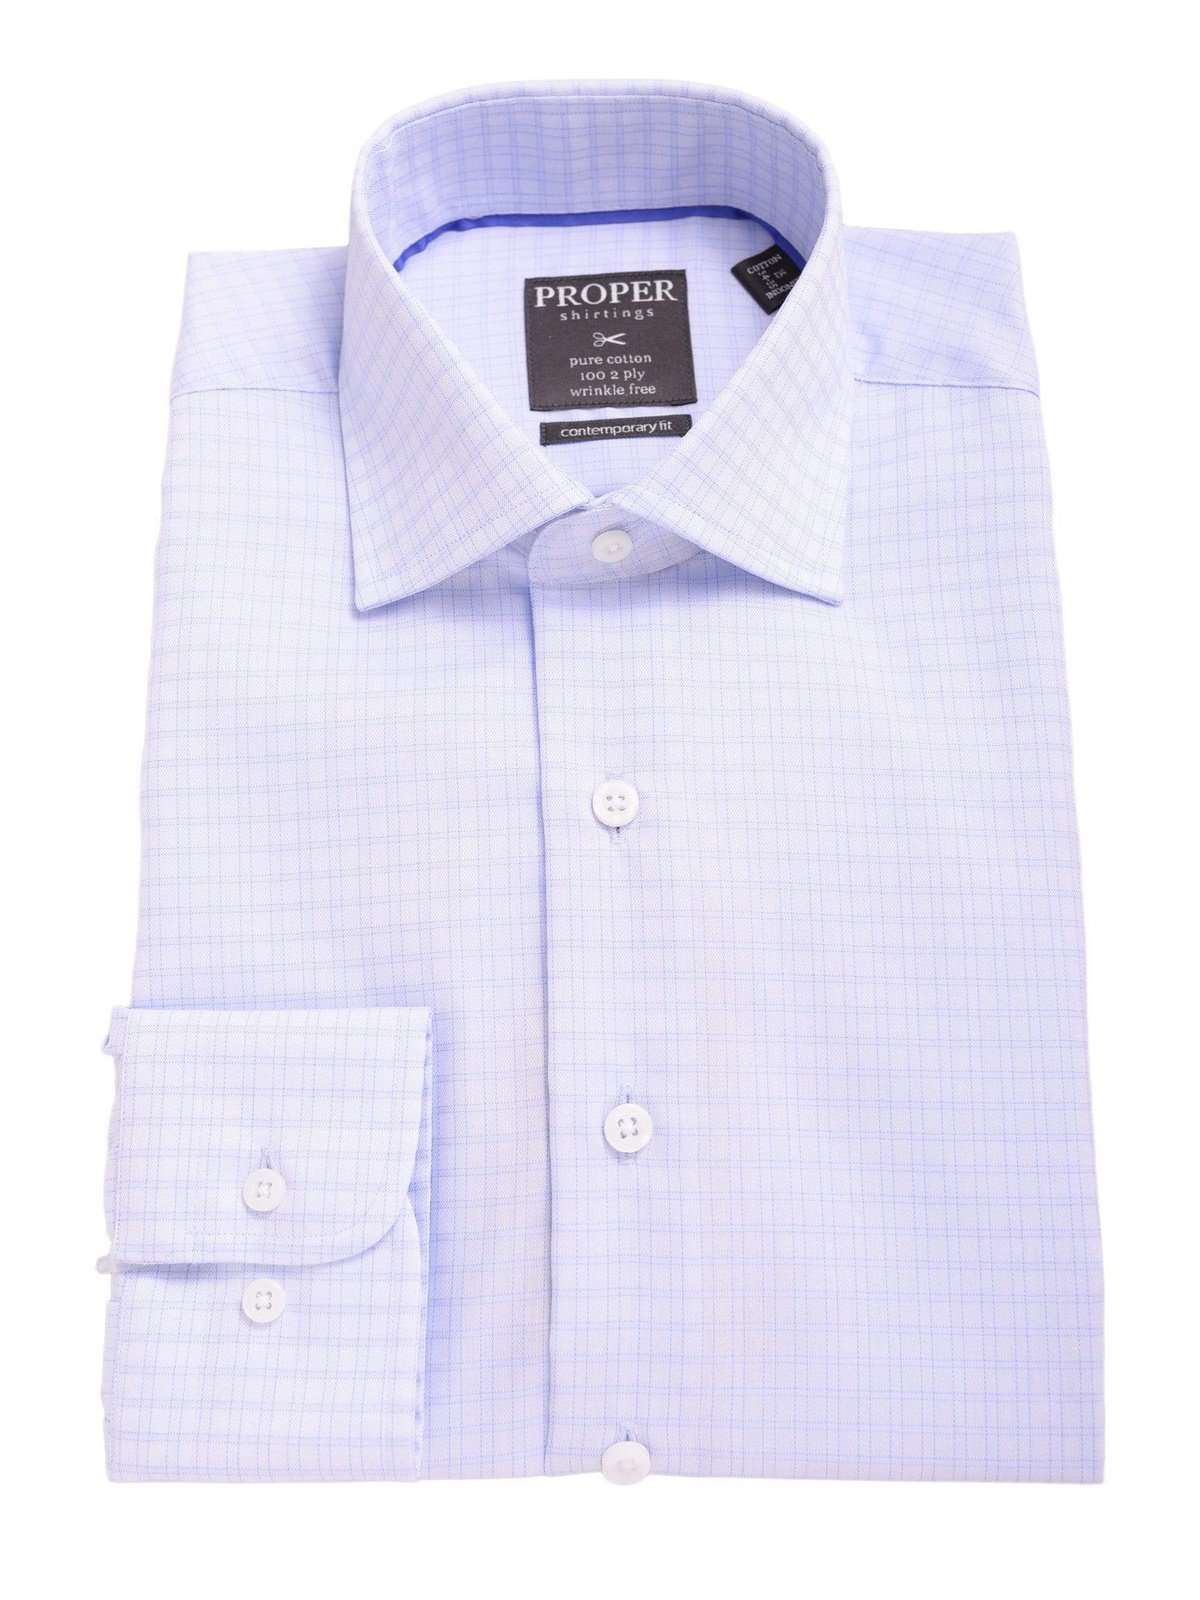 Proper Shirtings SHIRTS 14 1/2 32/33 Mens Slim Fit Blue Plaid Spread Collar 100 2 Ply Wrinkle Free Cotton Dress Shirt